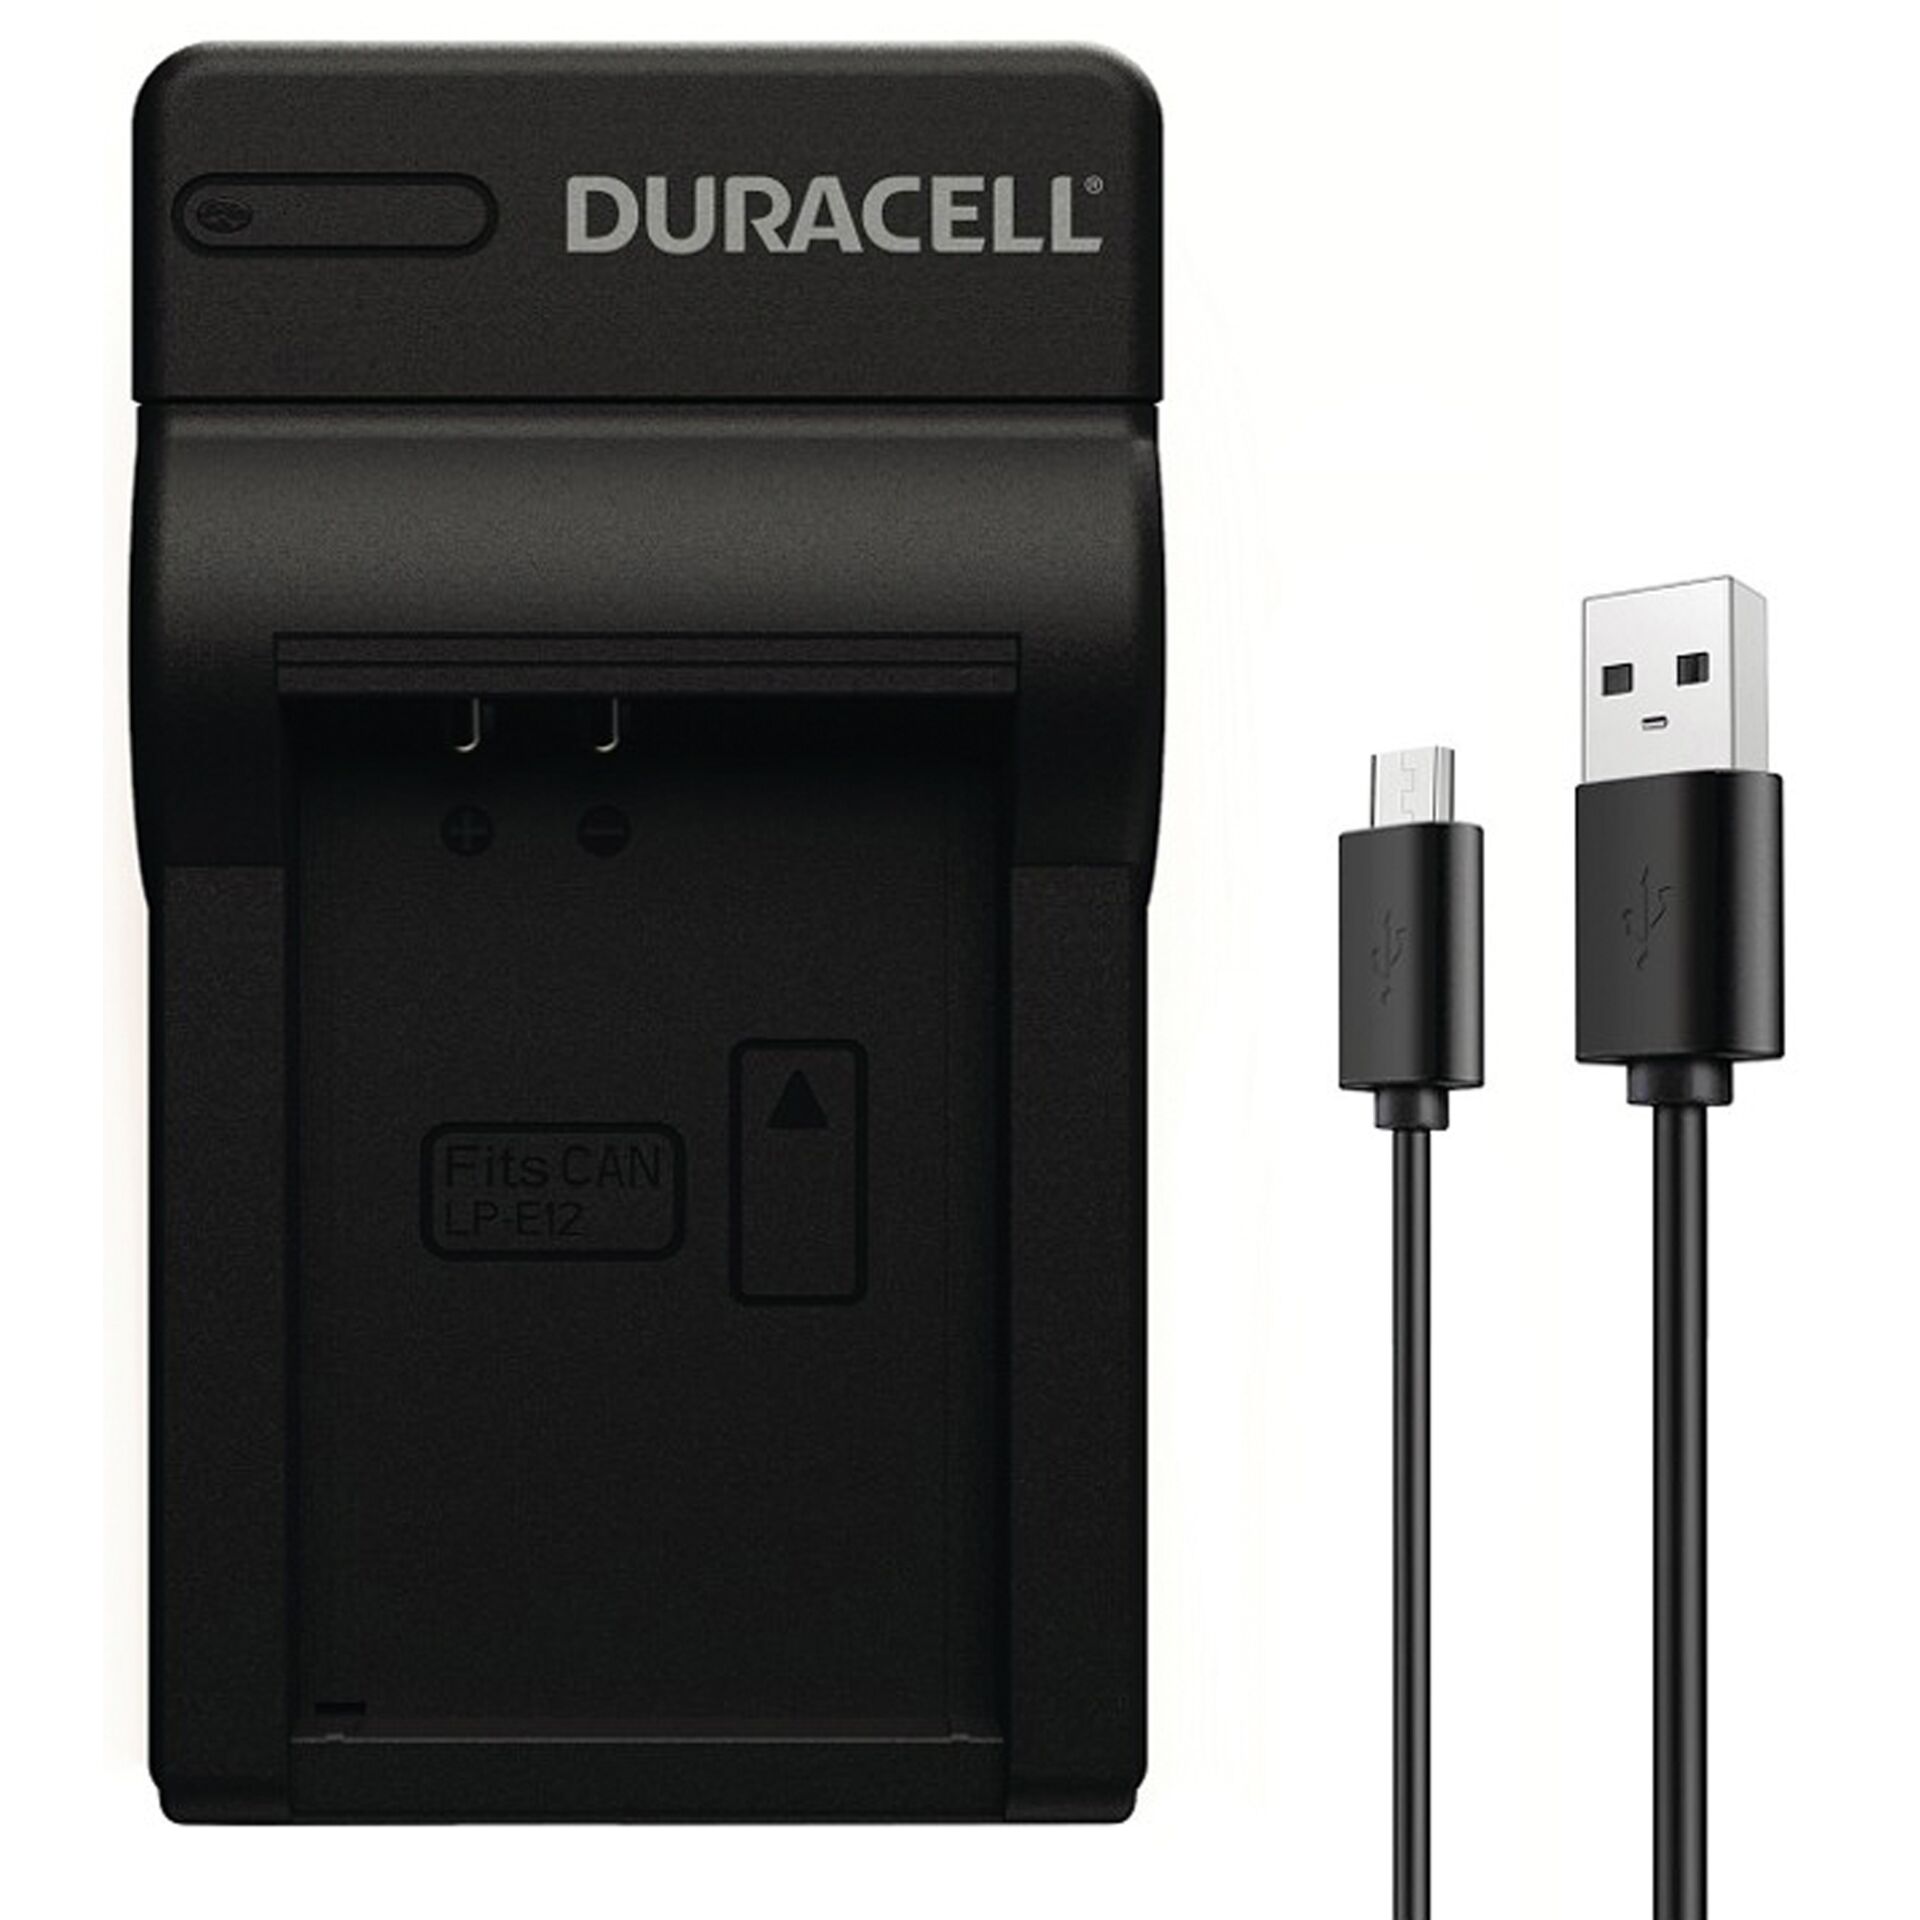 Duracell caricabatt.con cavo USB per DRCE12/LP-E12